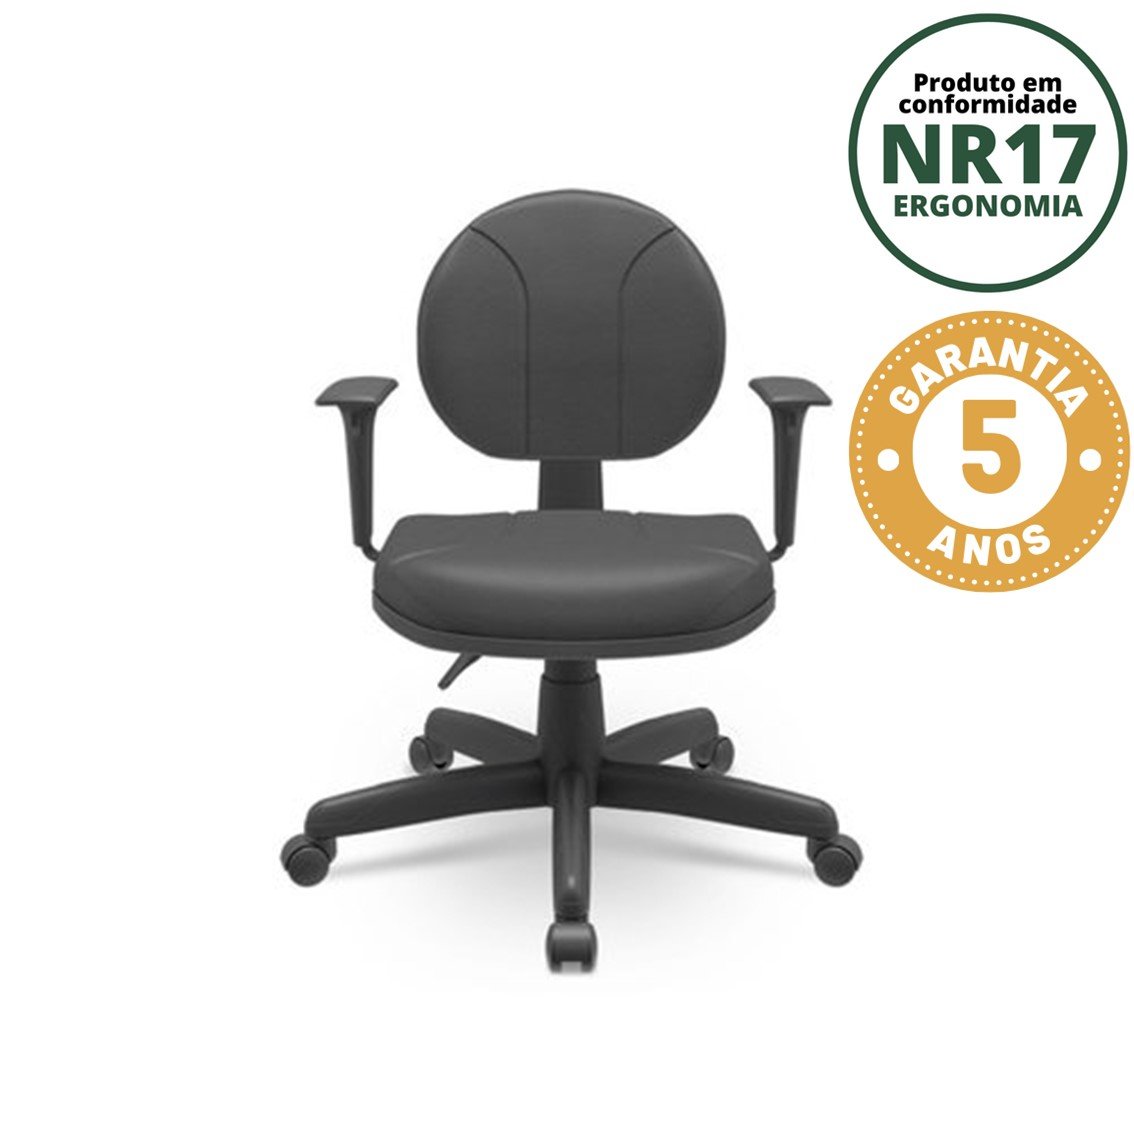 Cadeira para Escritório Ergonômica Secretária Backsystem Operativa NR17 Plaxmetal - 1